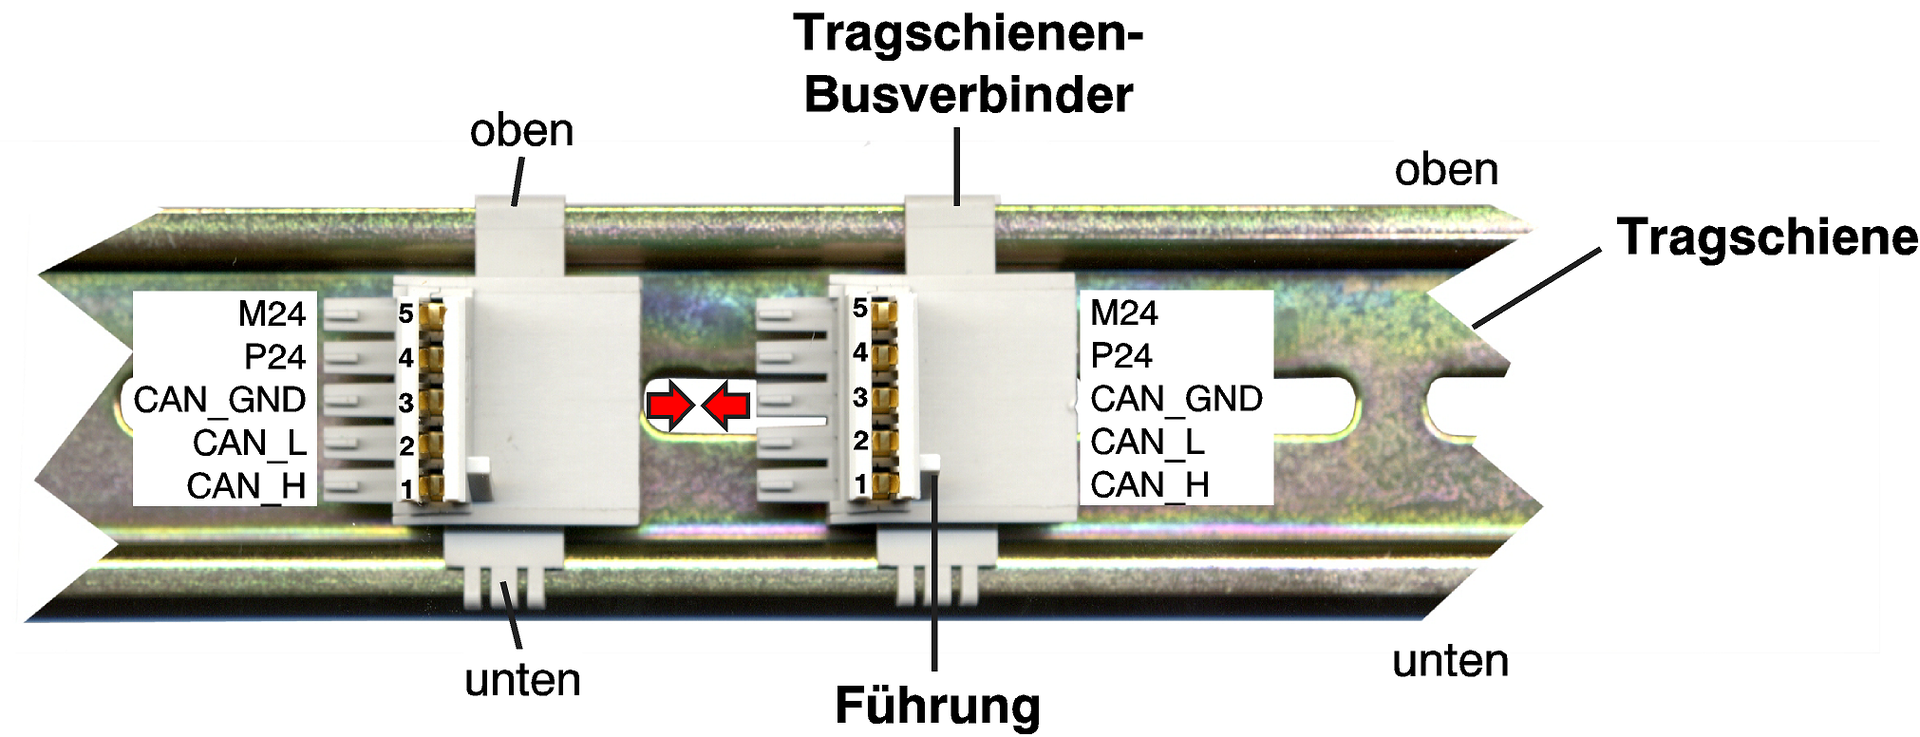 Abbildung: Tragschiene mit Busverbinder